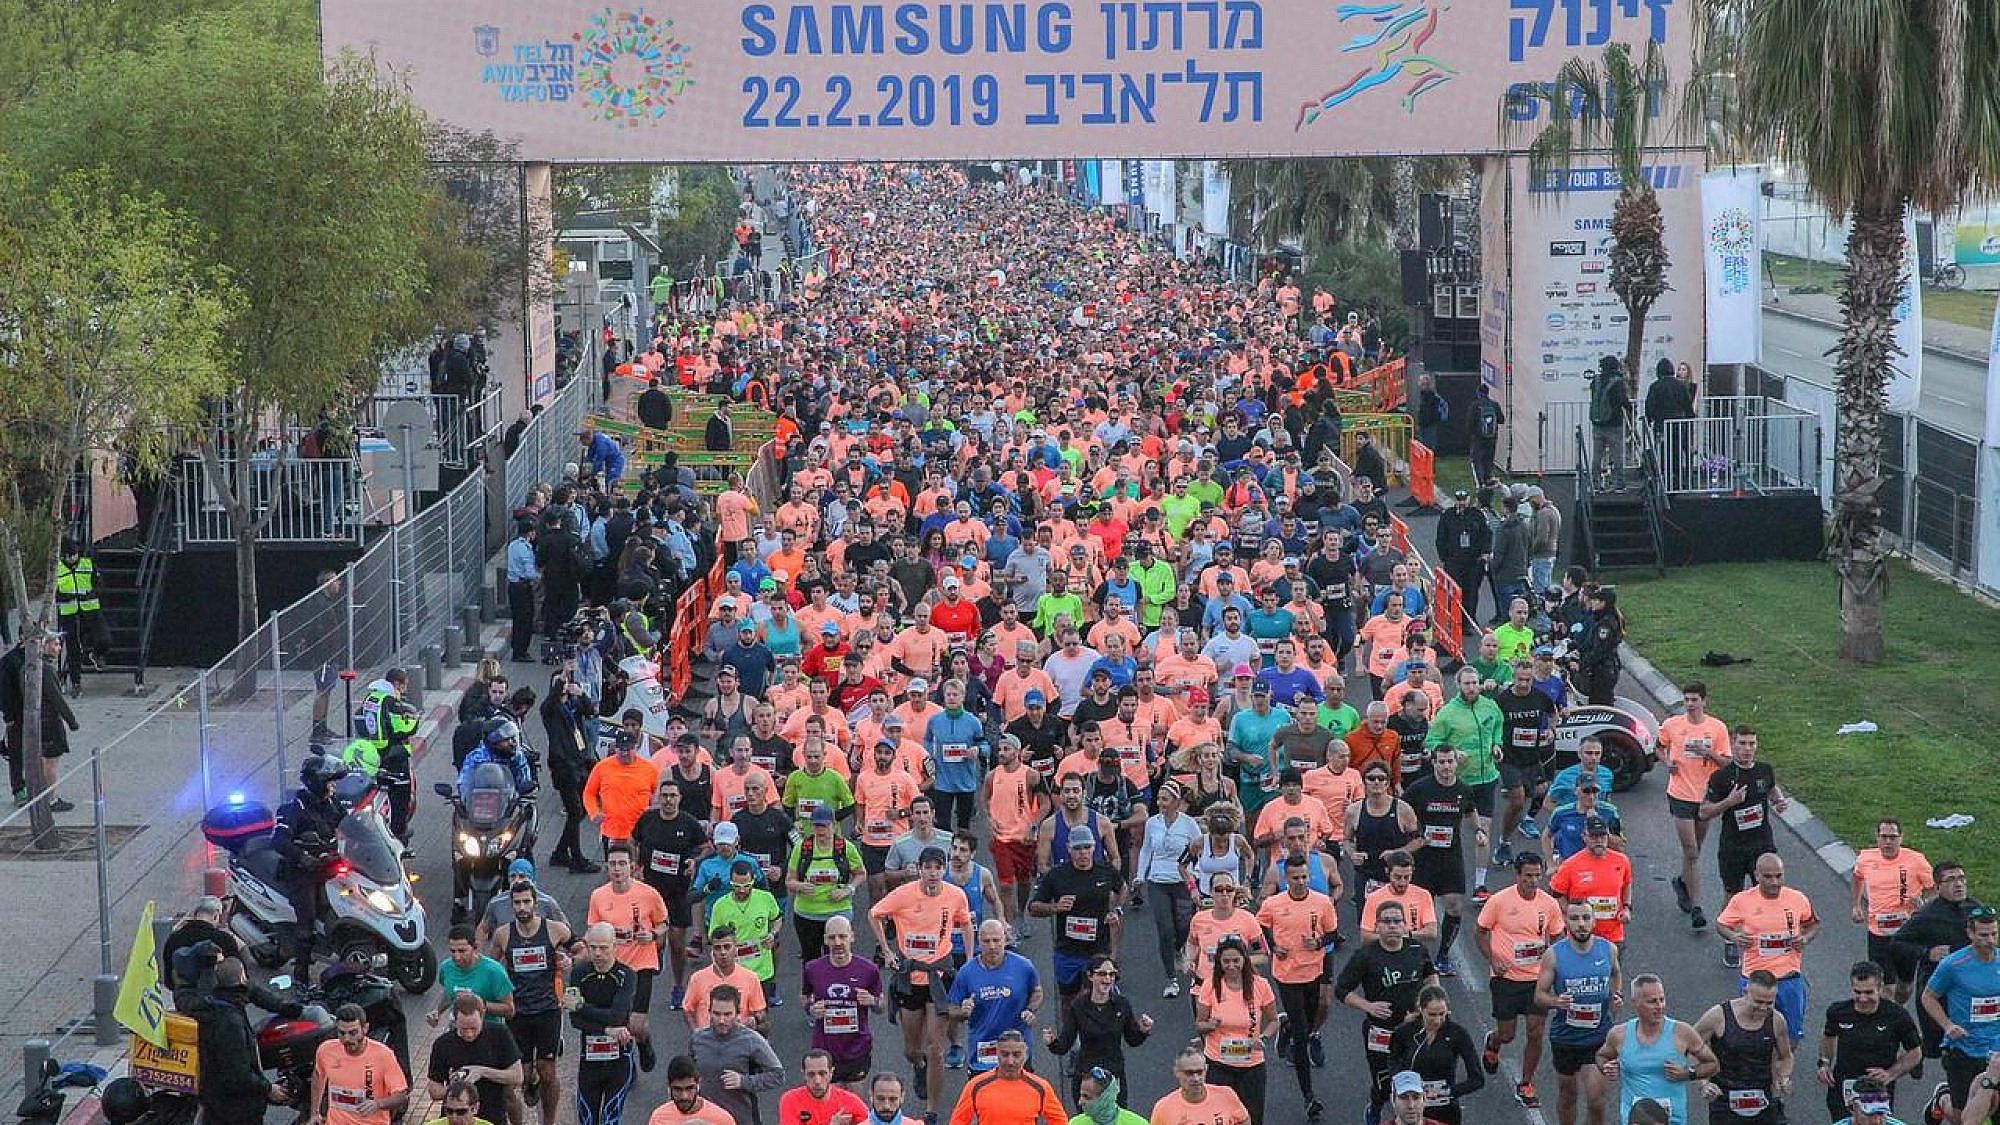 מרתון ת"א. צילום באדיבות כפיים ועיריית תל אביב יפו